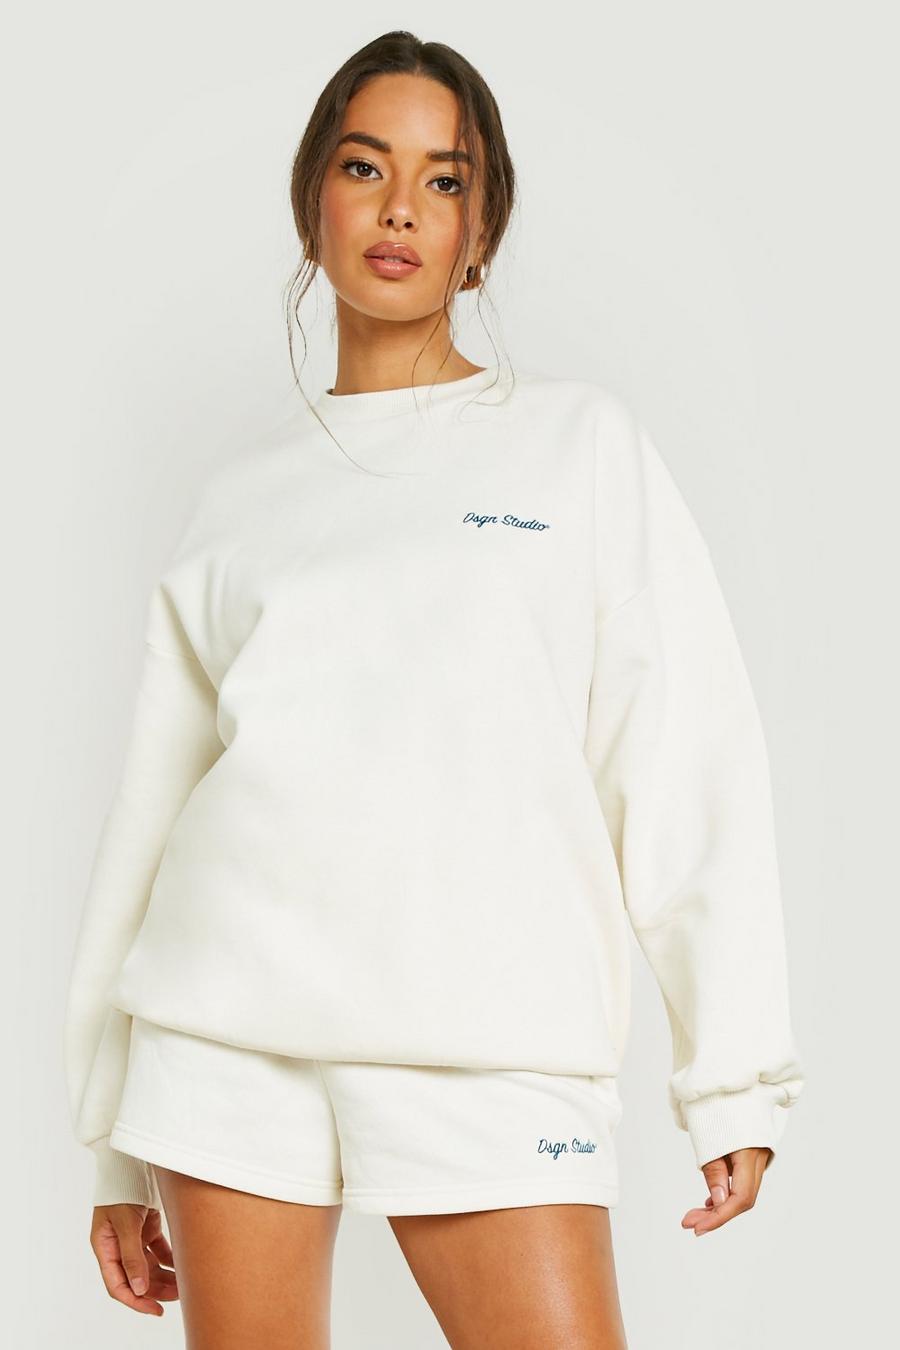 Ecru white Dsgn Studio Embroidered Sweater Tracksuit 